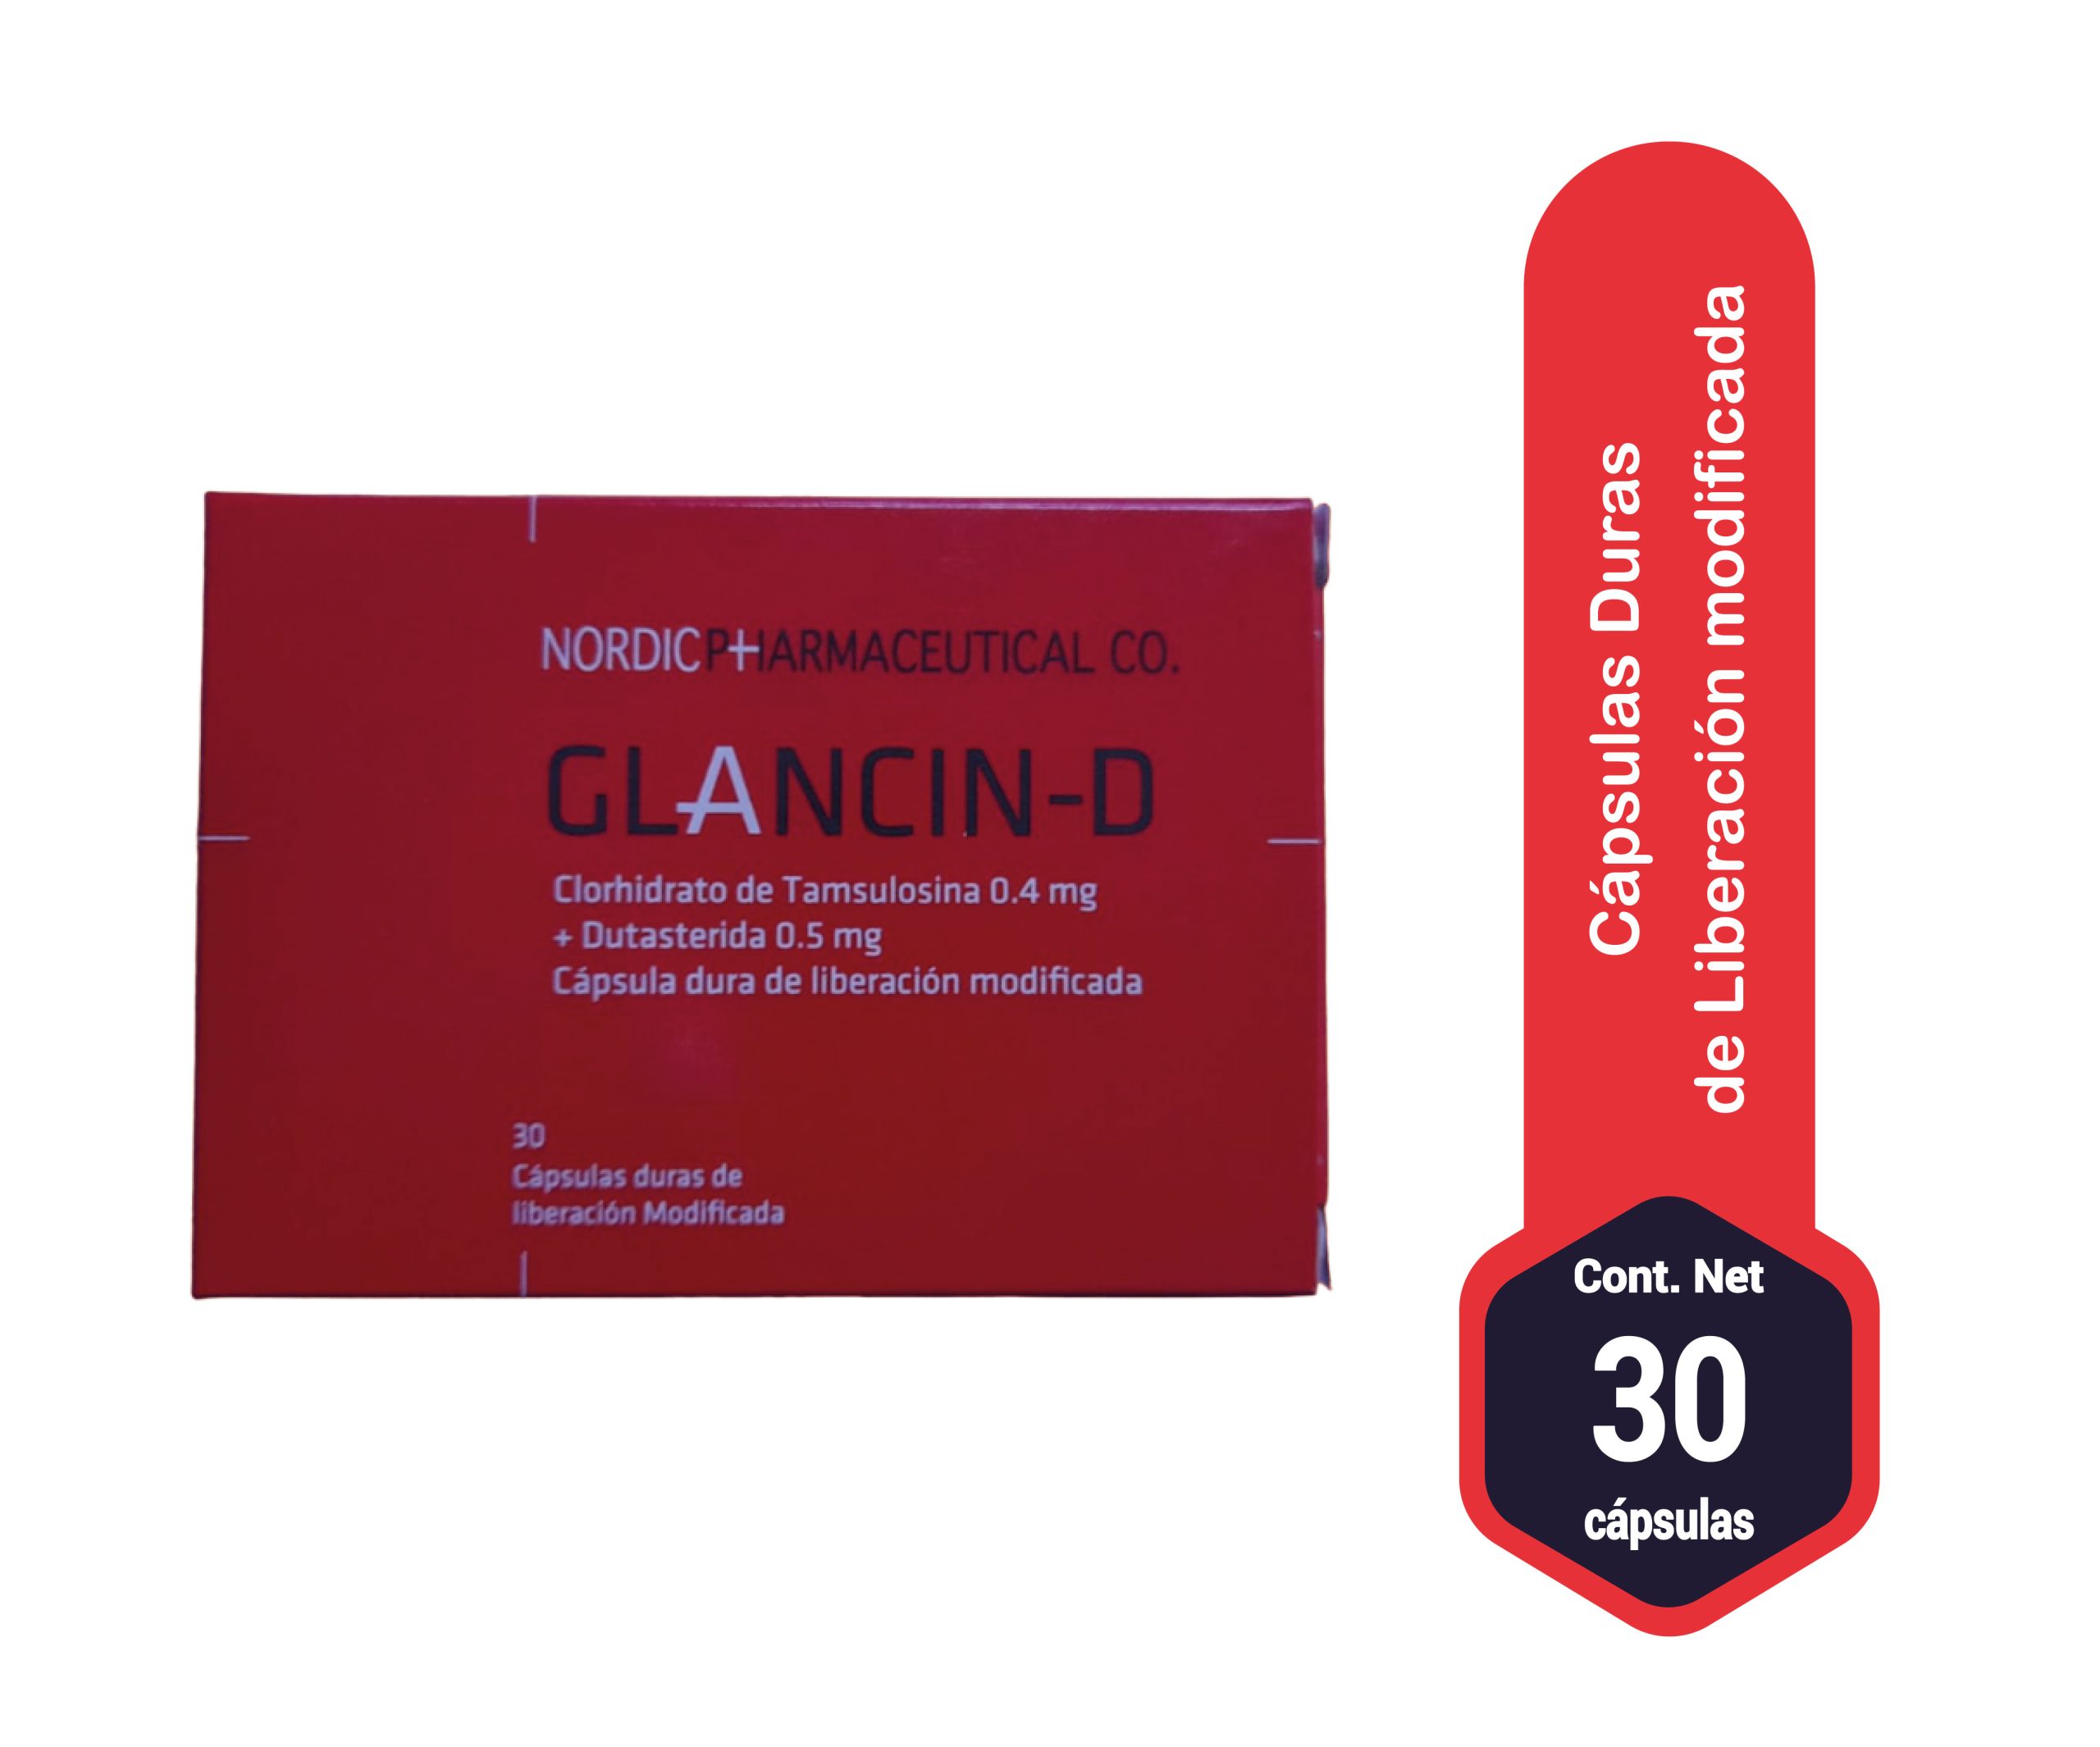 glancin-d 30 cap